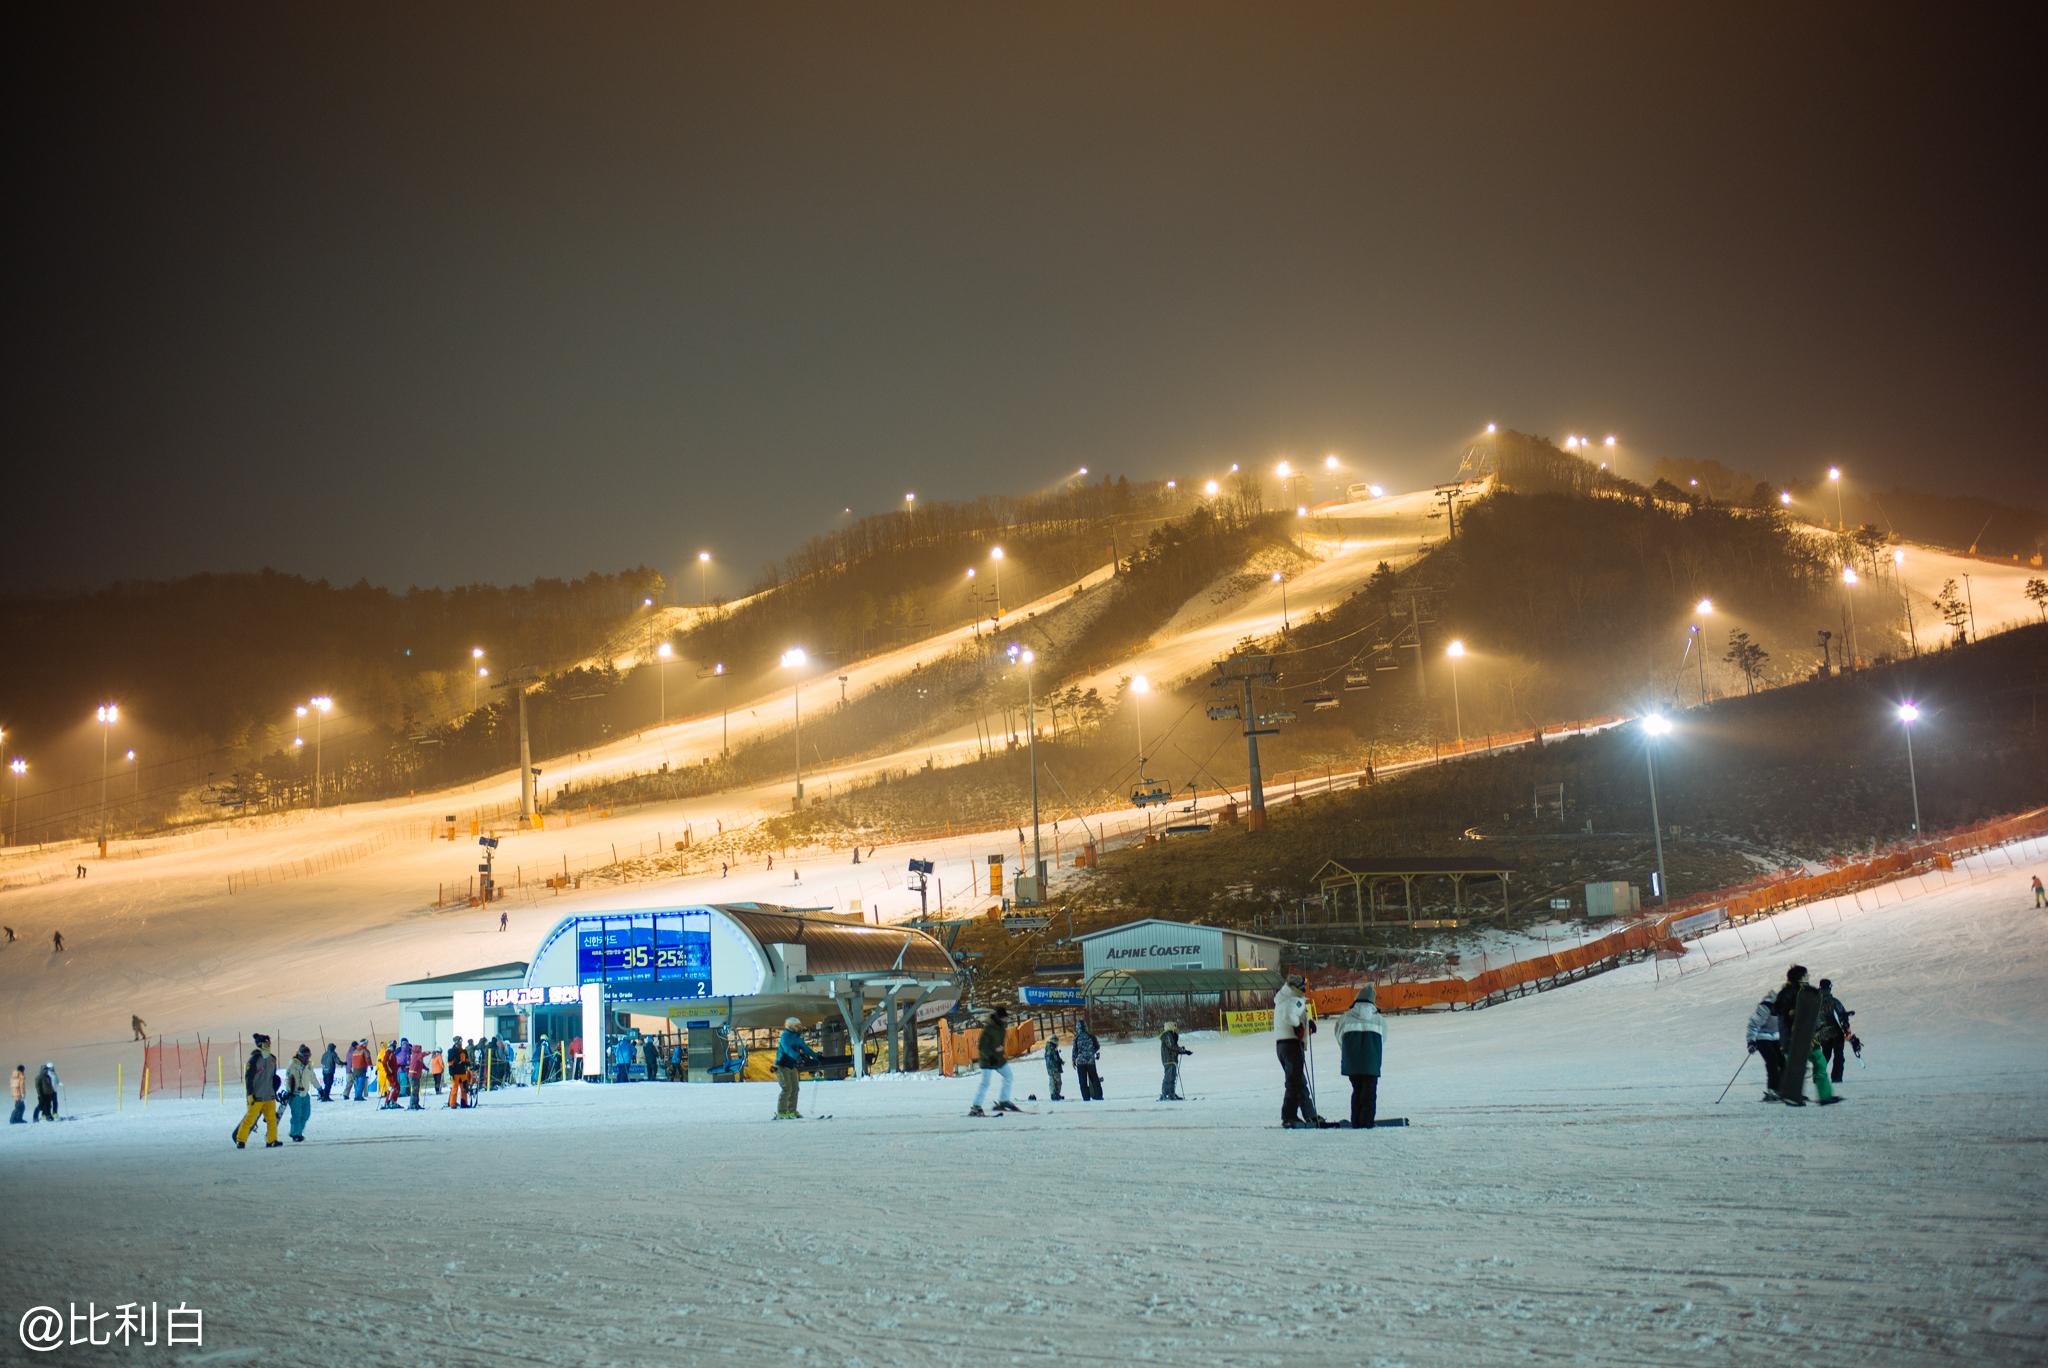 【旅游贴士】韩国江原道冬季庆典 Ski Festivals in Gangwon| 让你玩翻天的4大滑雪盛典！ - 吃喝玩乐旅宝妈 LOVELYBAO123 FAMILY TRAVEL BLOG